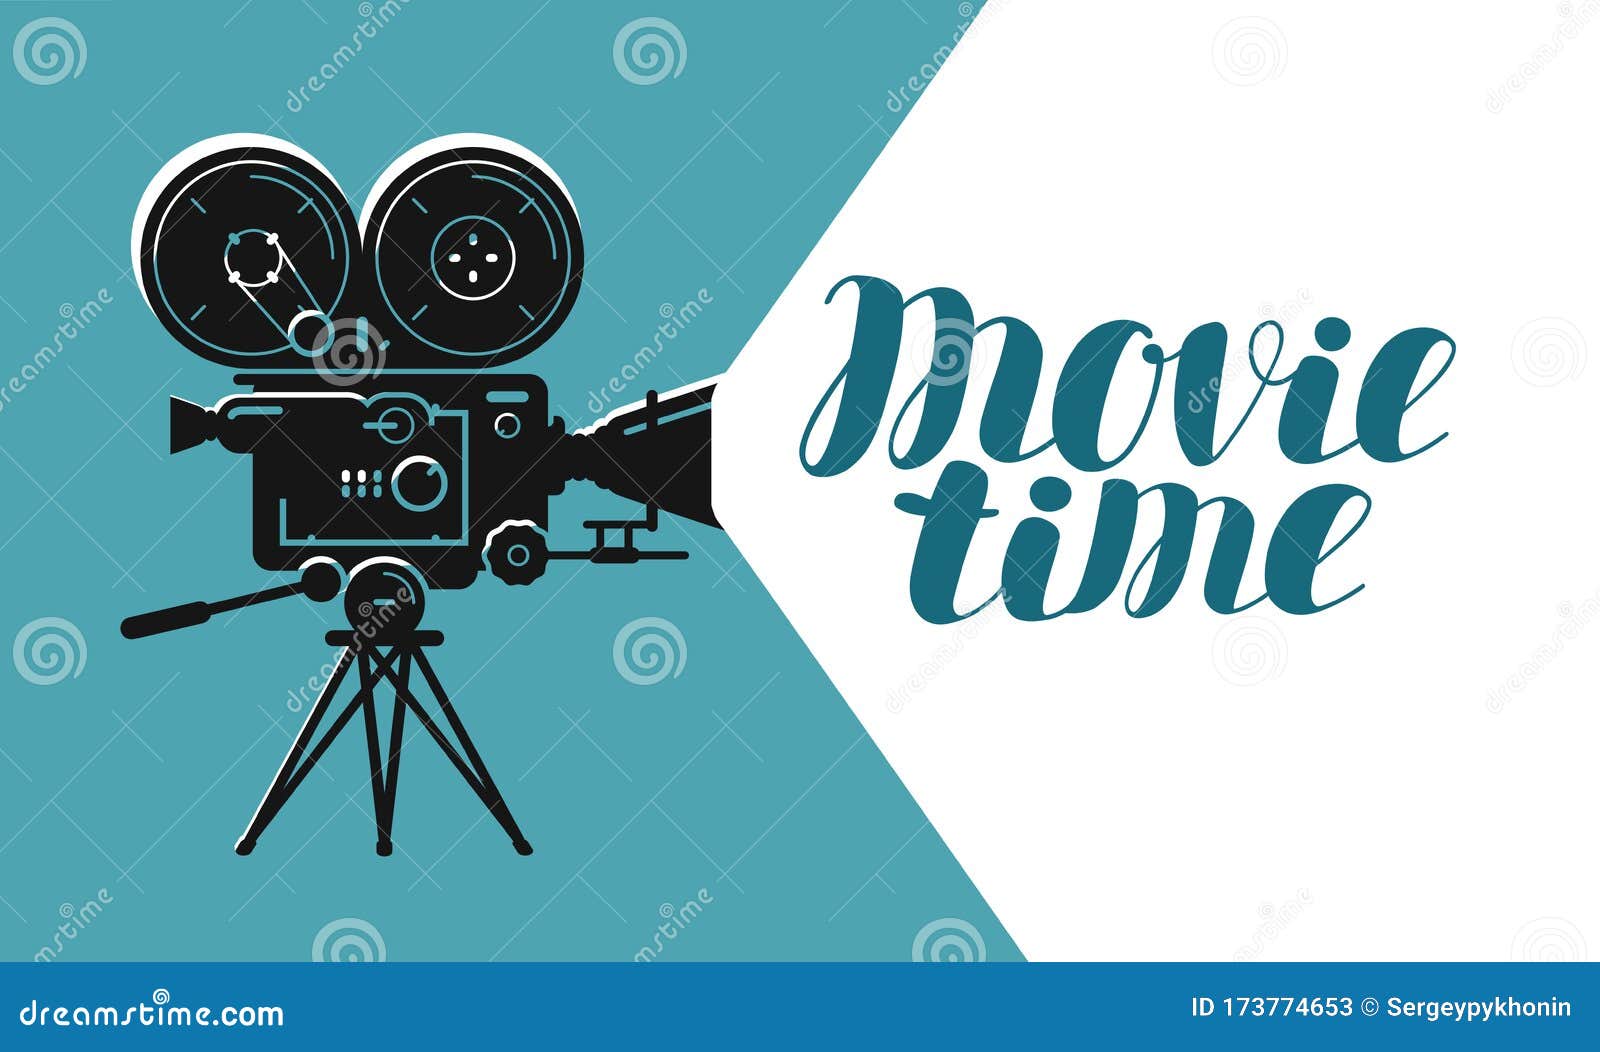 retro movie camera or projector. cinema, video  